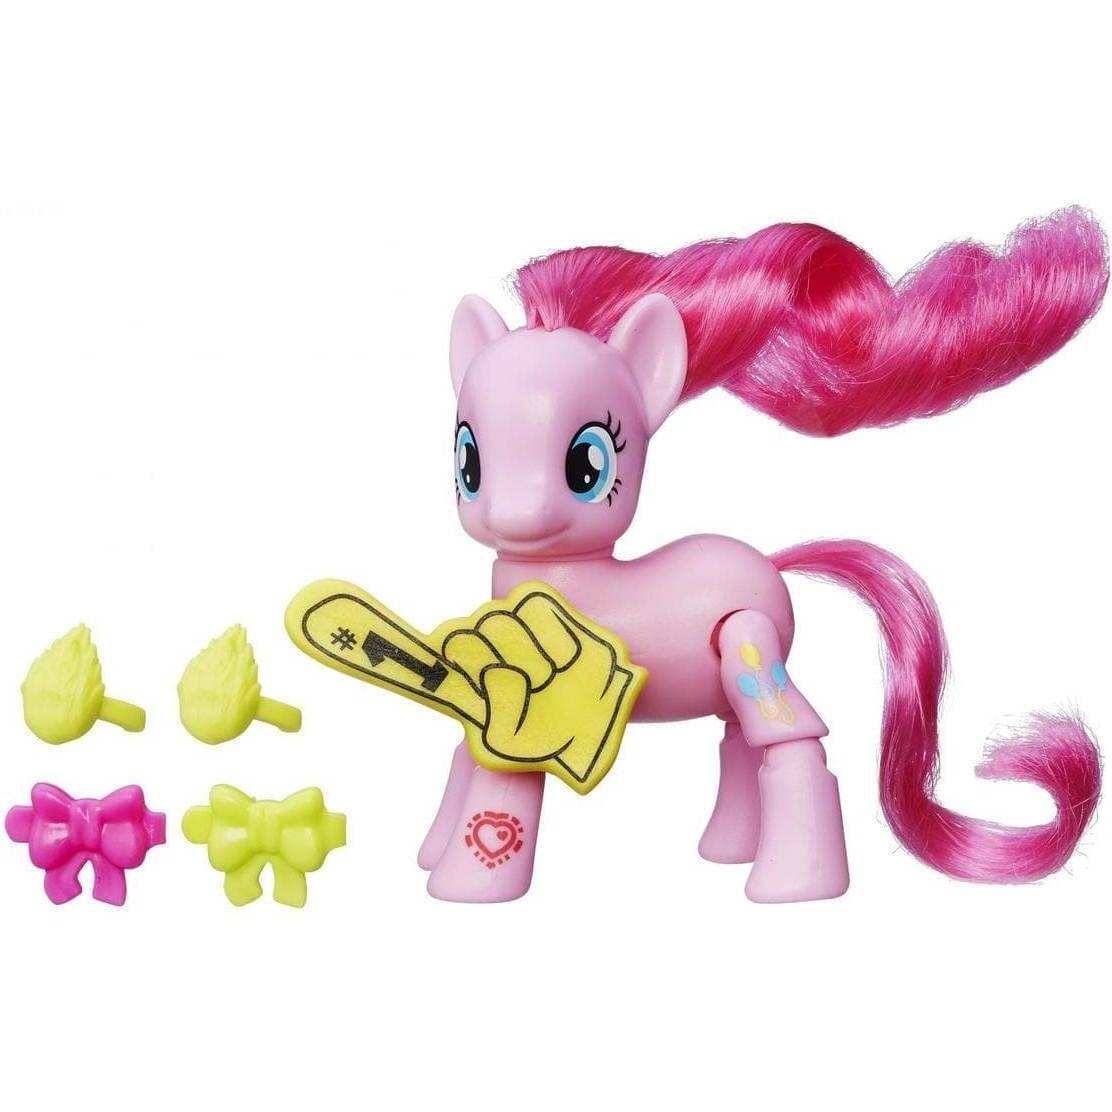    My Little Pony   -   (Hasbro)